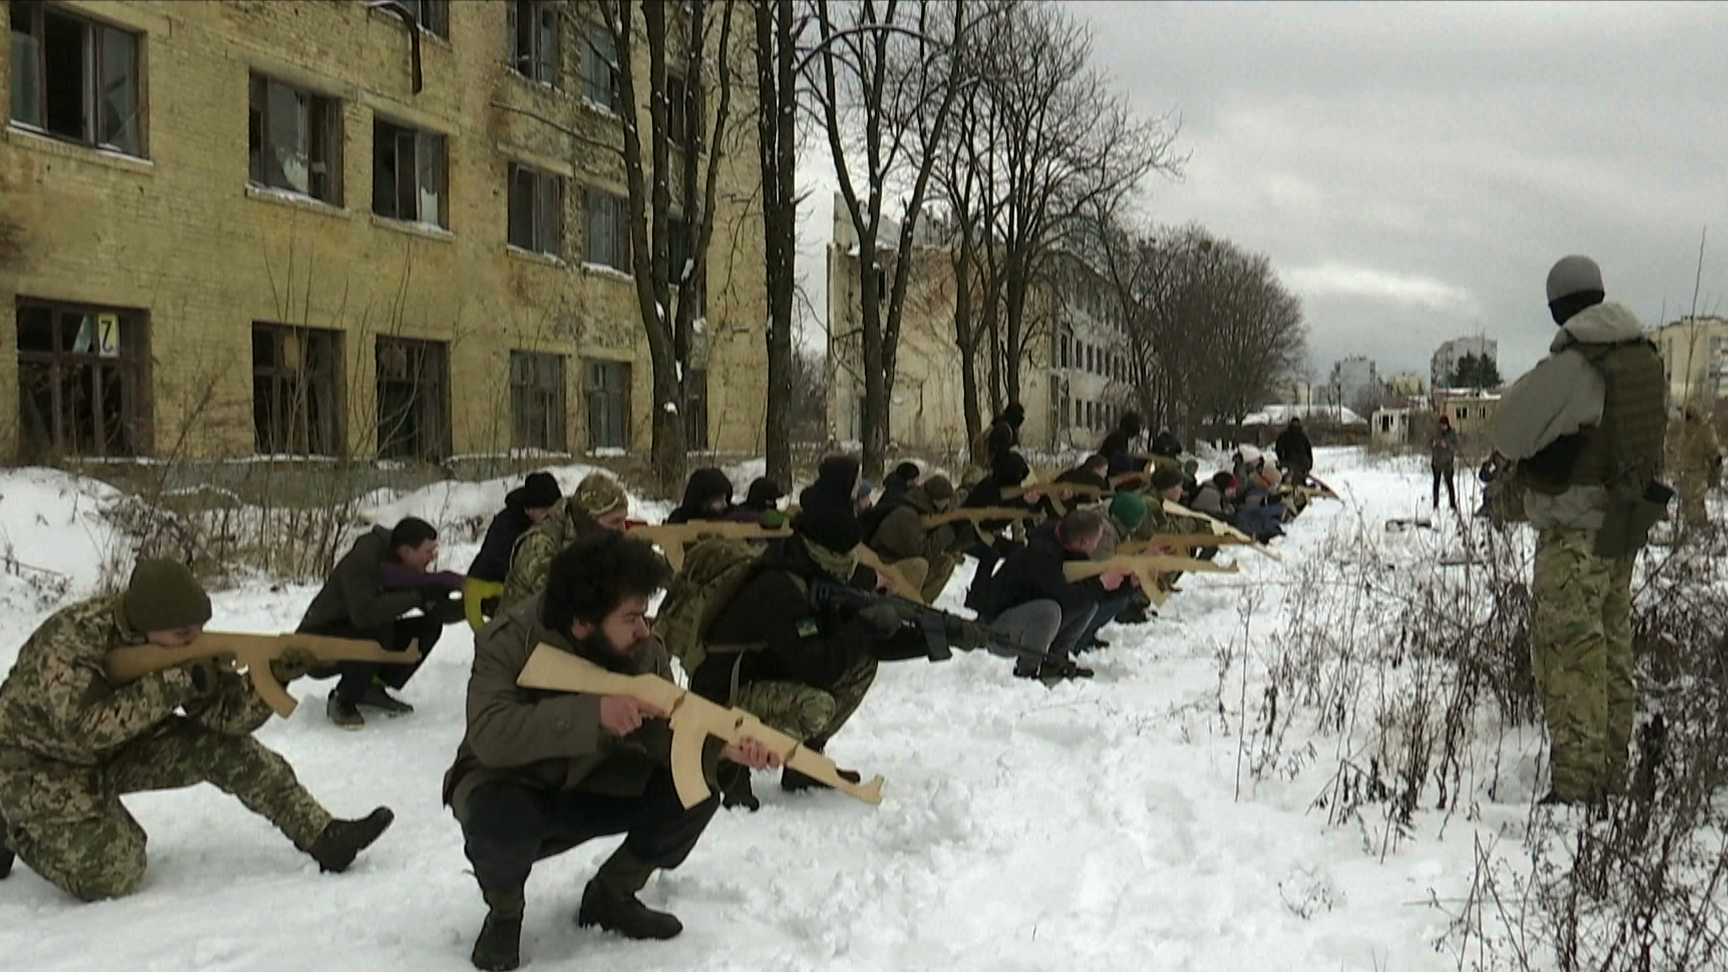 Ukraina przygotowuje się do ewentualnej rosyjskiej agresji. Trwają szkolenia cywilów